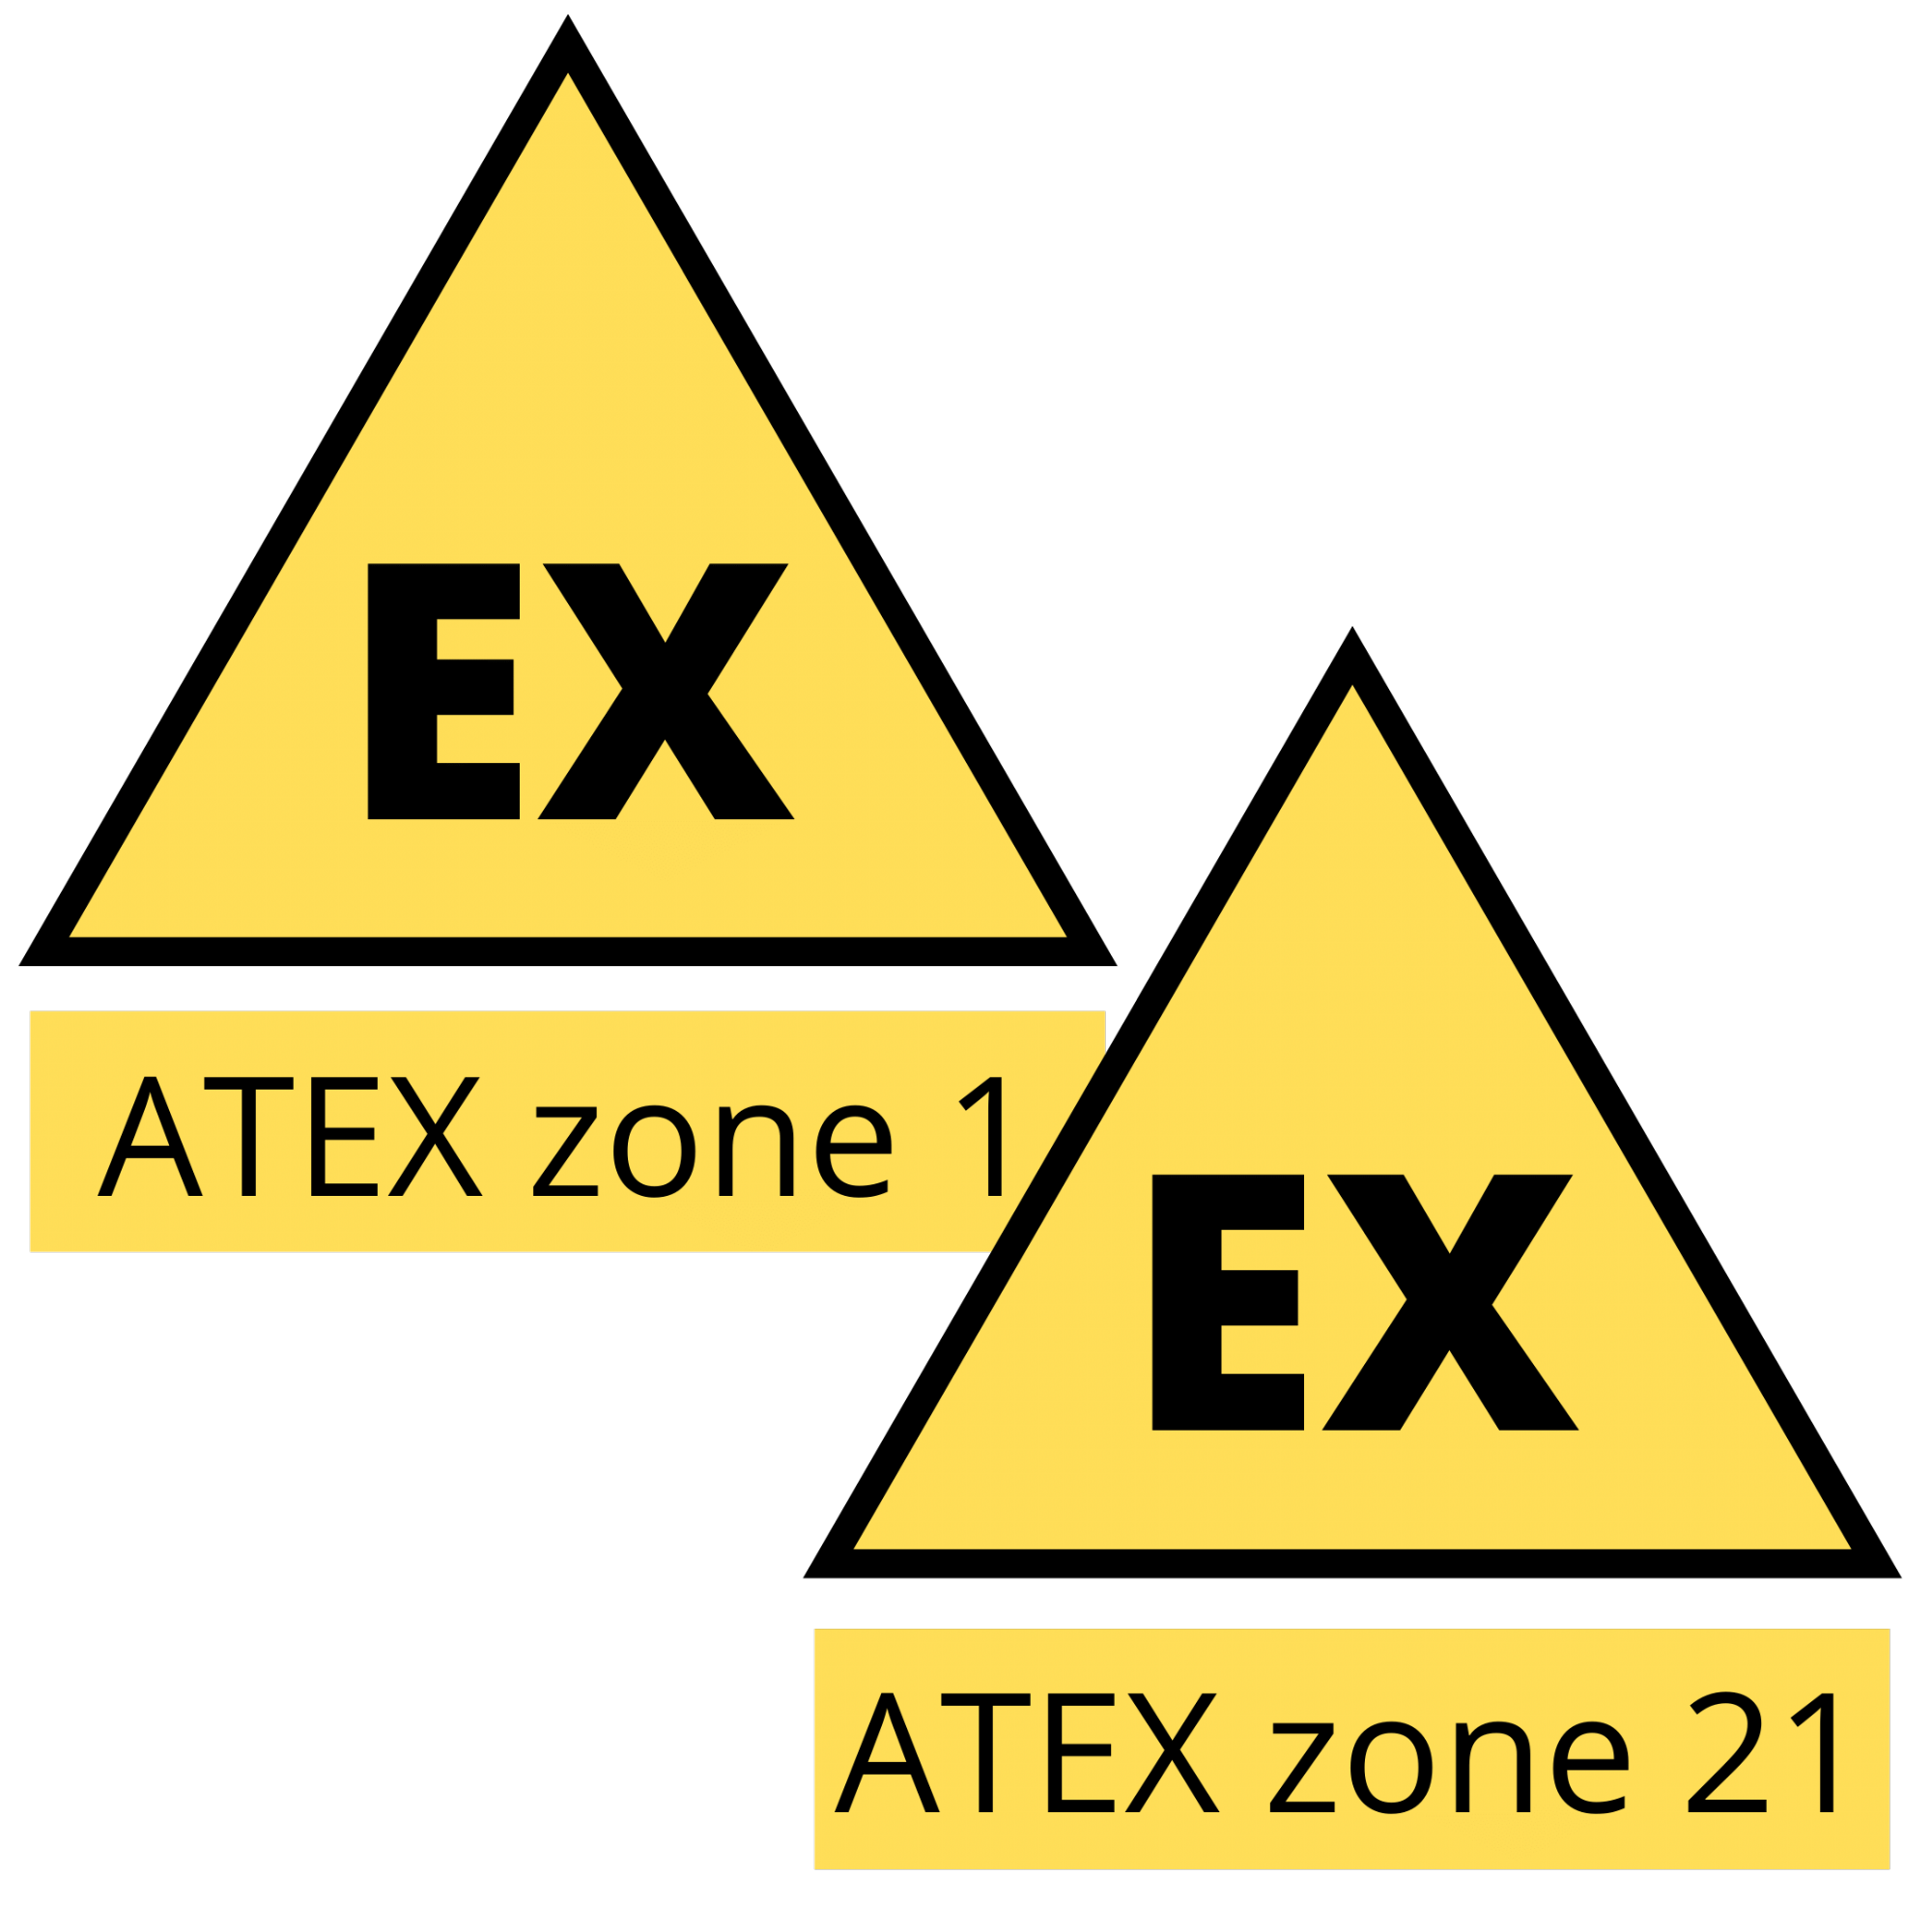 适用于 1 區和 21 區的 ATEX 振動監控器